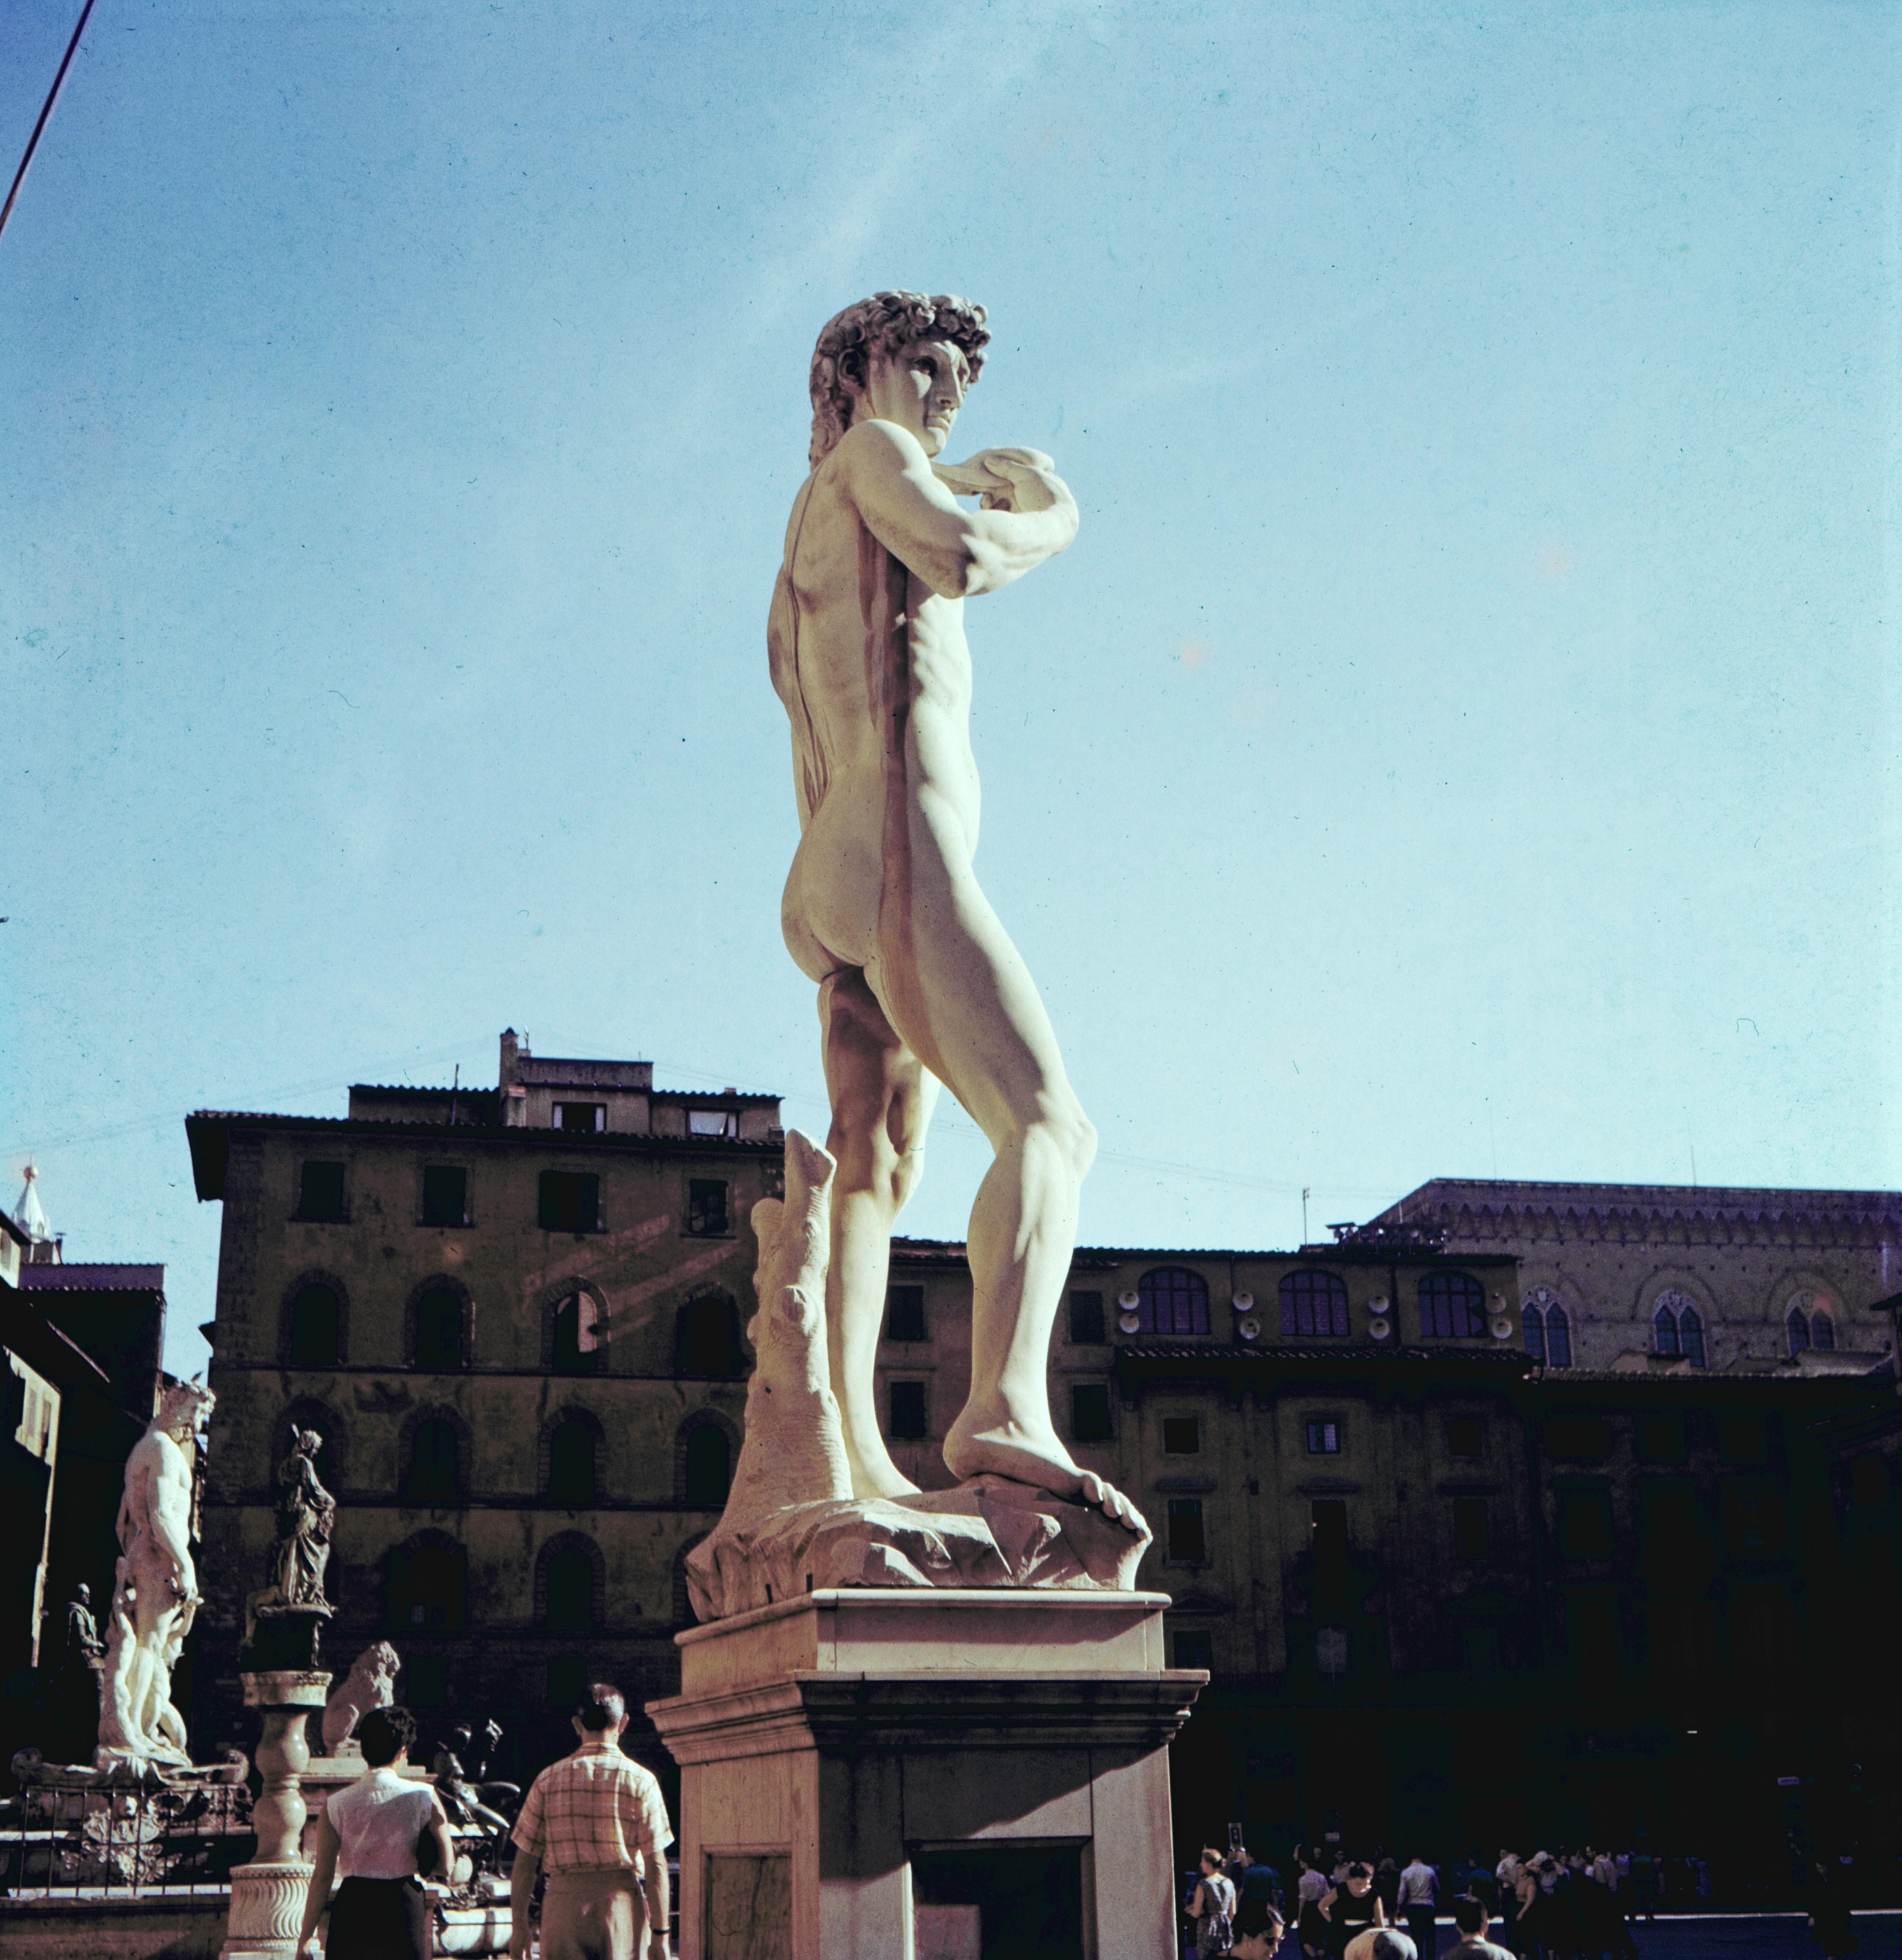 Unknown Color Photograph - Italy in  1956 - David - Piazza della Signoria, Florence